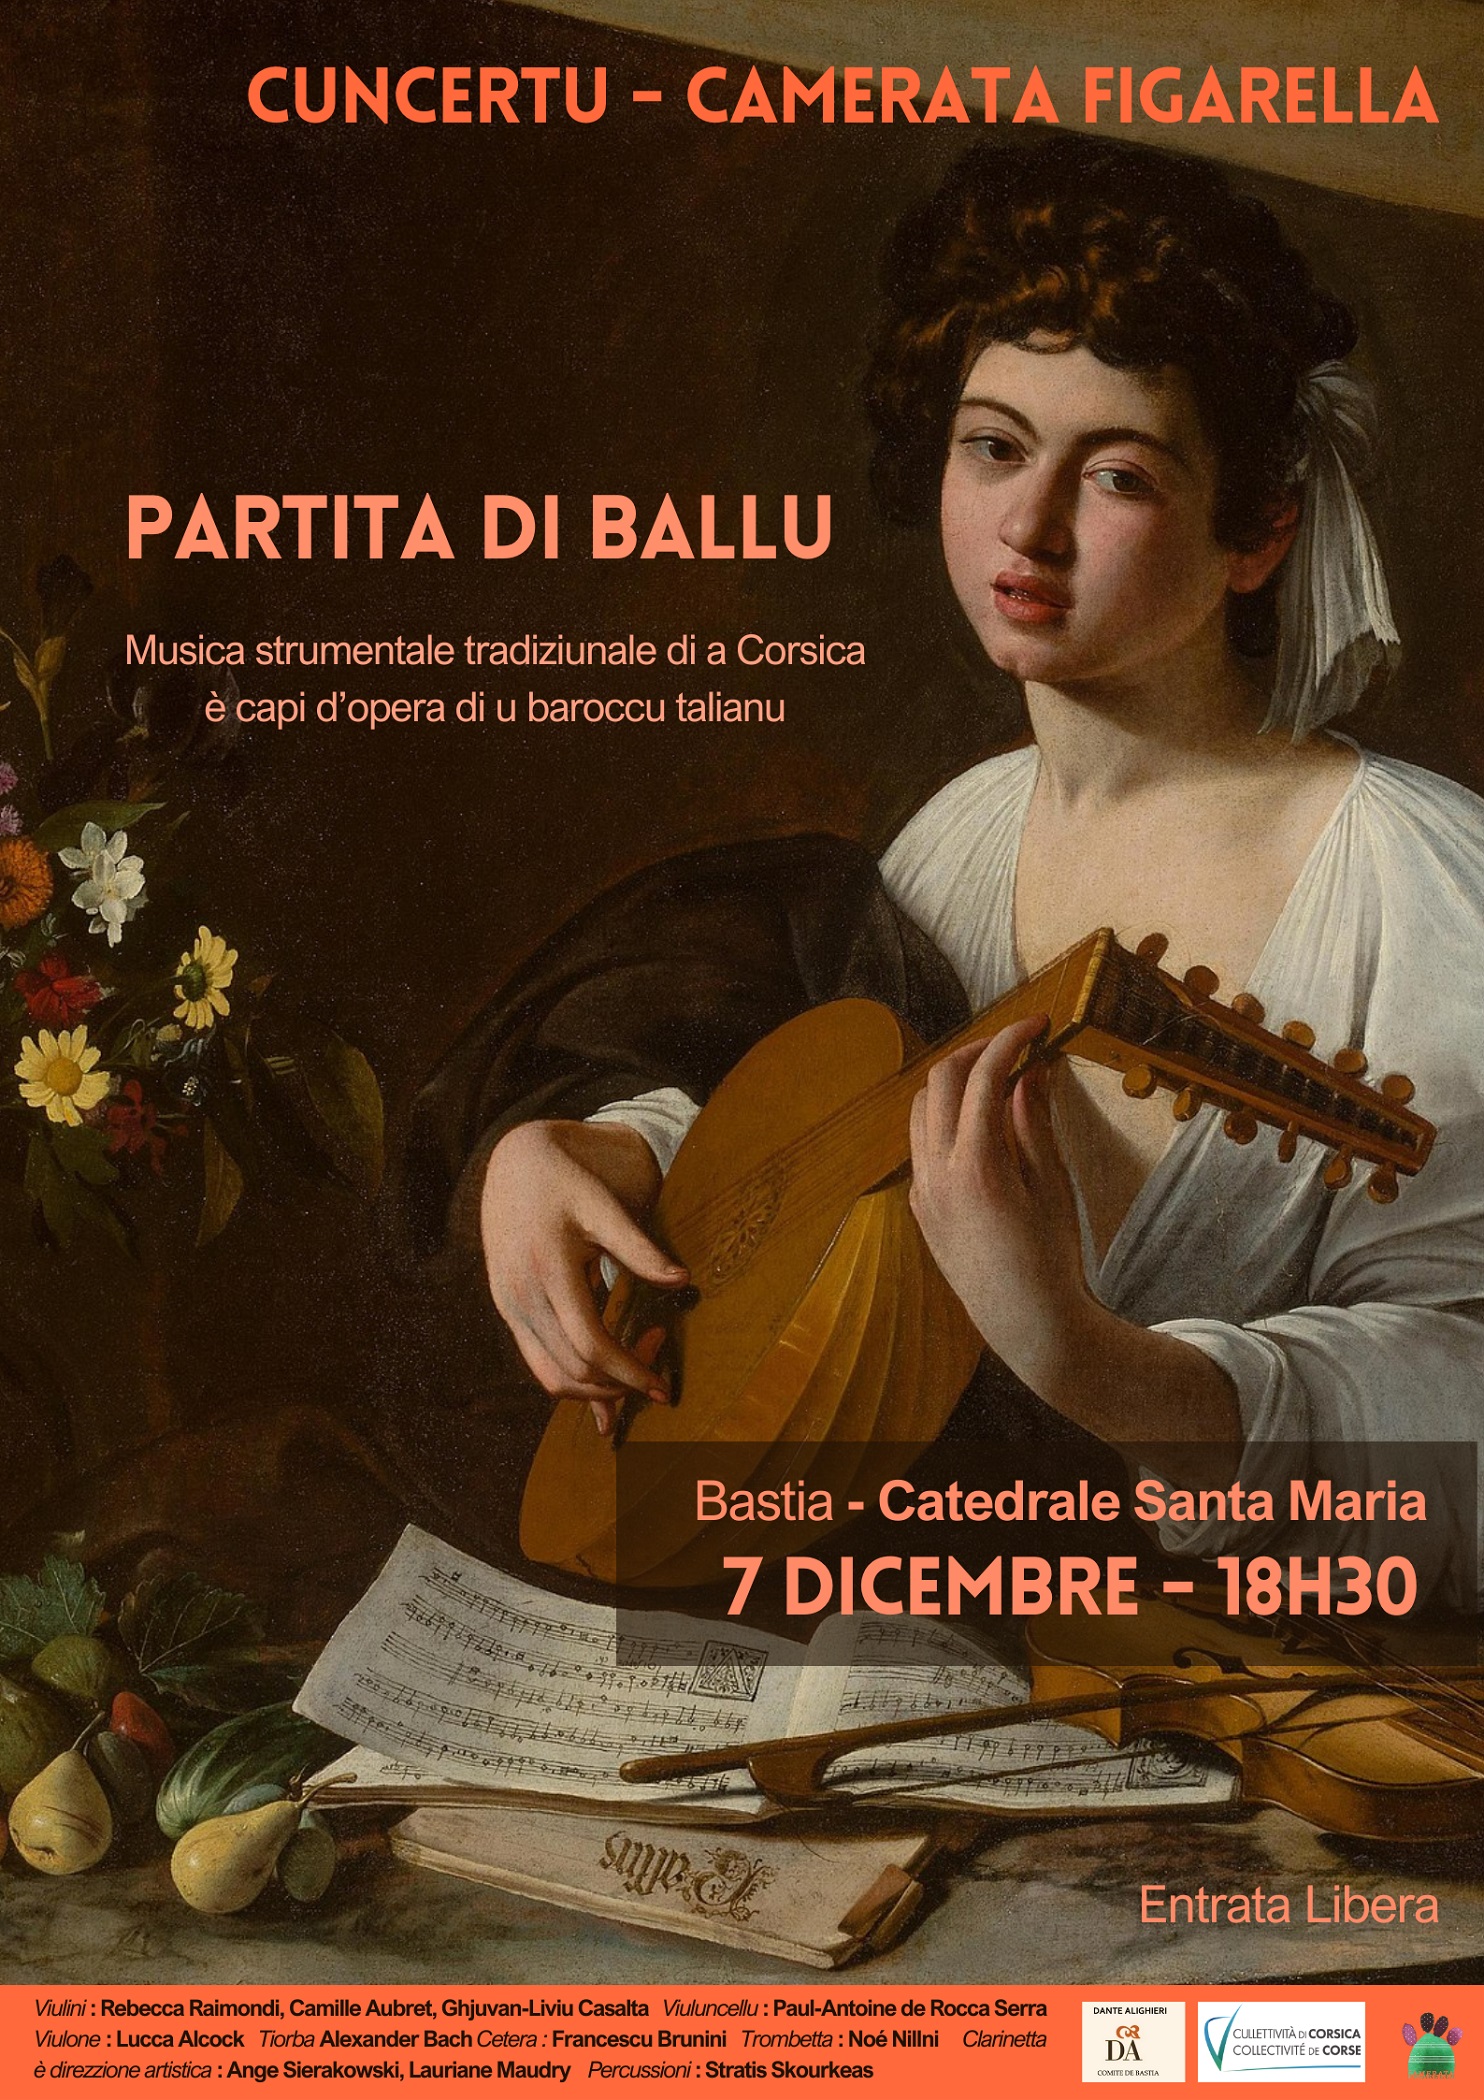 "Partita di ballu" : Le nouveau spectacle de La Camerata Figarella